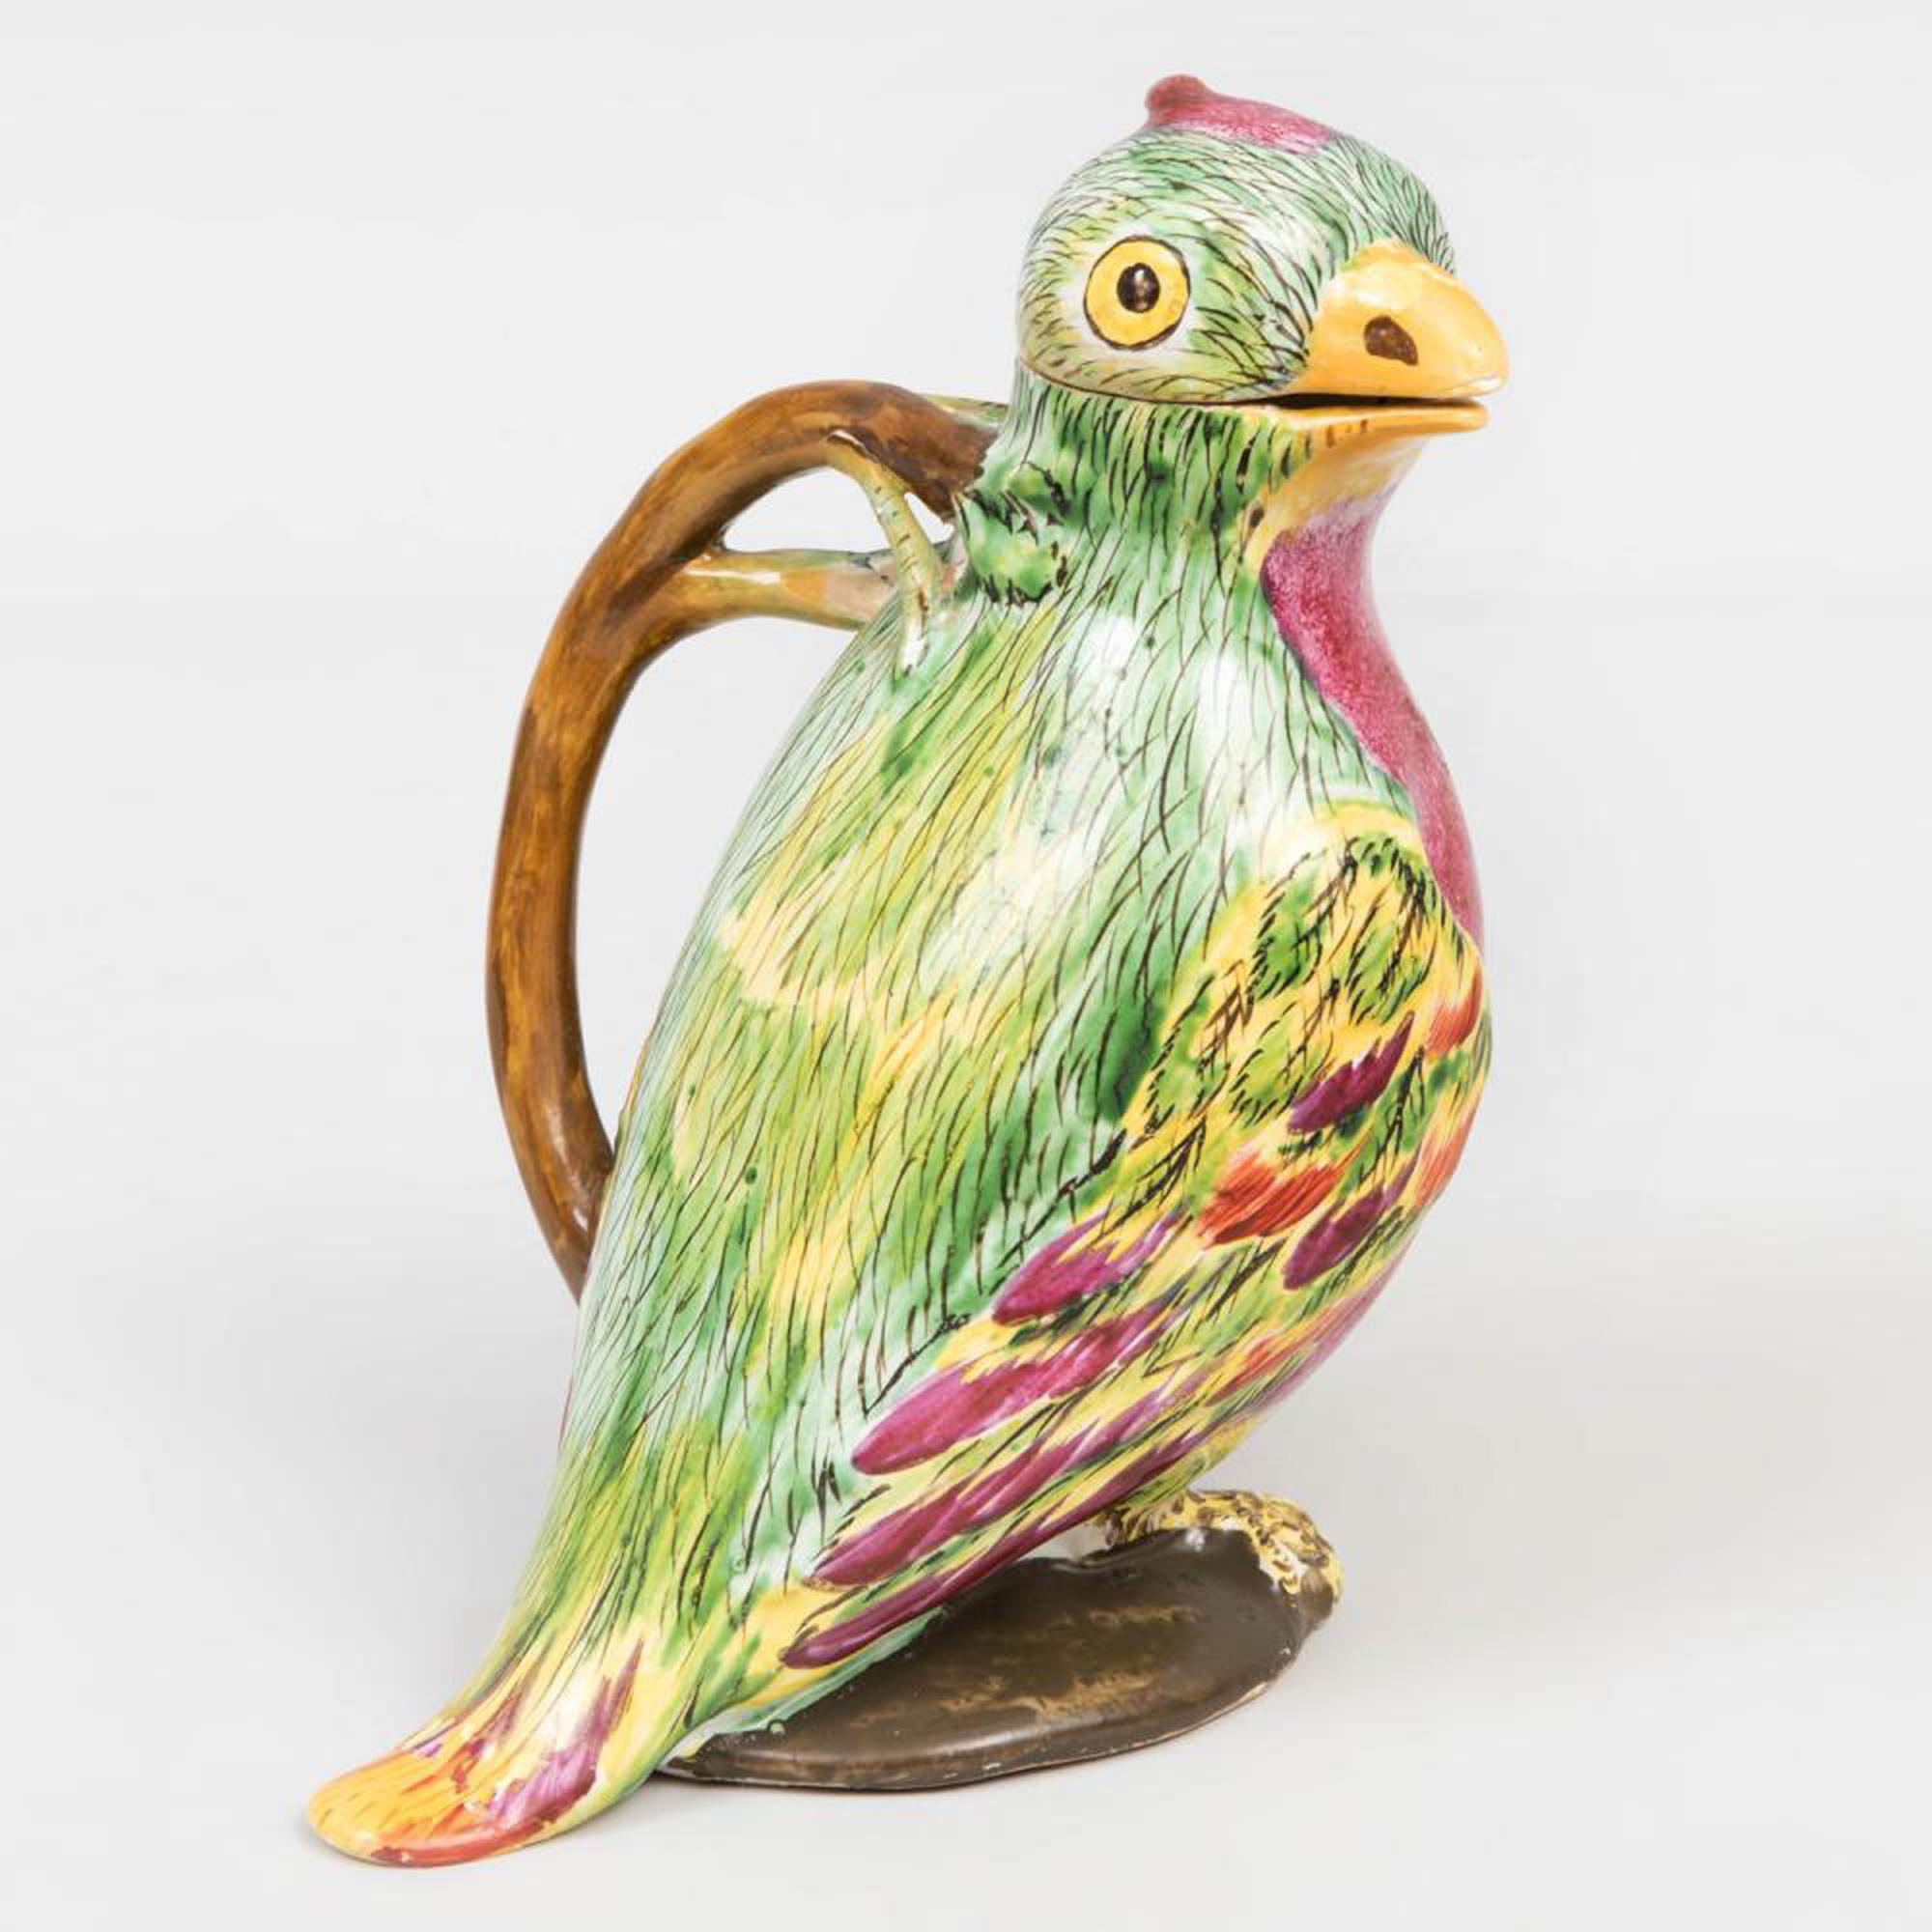 Proskau Fayence Tompe L'Oeil Krug in Form eines Papageis,
Circa 1770.

  Die europäische Tromp l'Oeil-Kanne aus zinnglasiertem Steingut hat die Form eines Papageis mit einem abnehmbaren Kopf, der den Deckel bildet.  Der Papagei wurde im heutigen